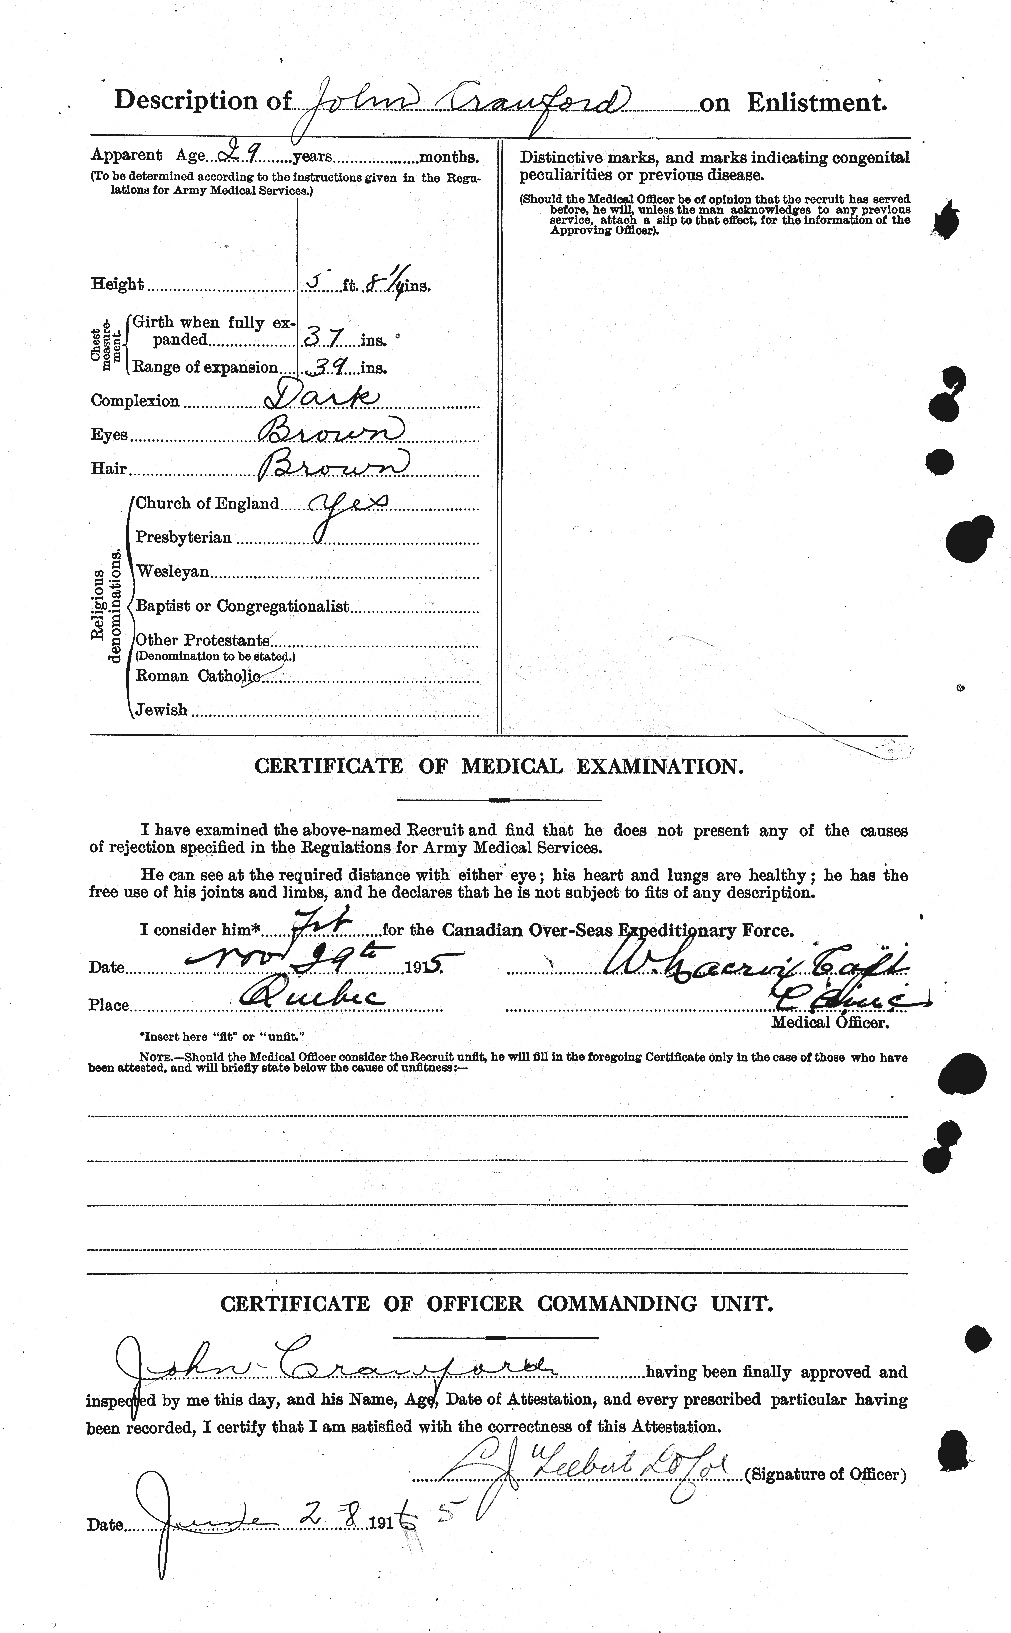 Dossiers du Personnel de la Première Guerre mondiale - CEC 062455b